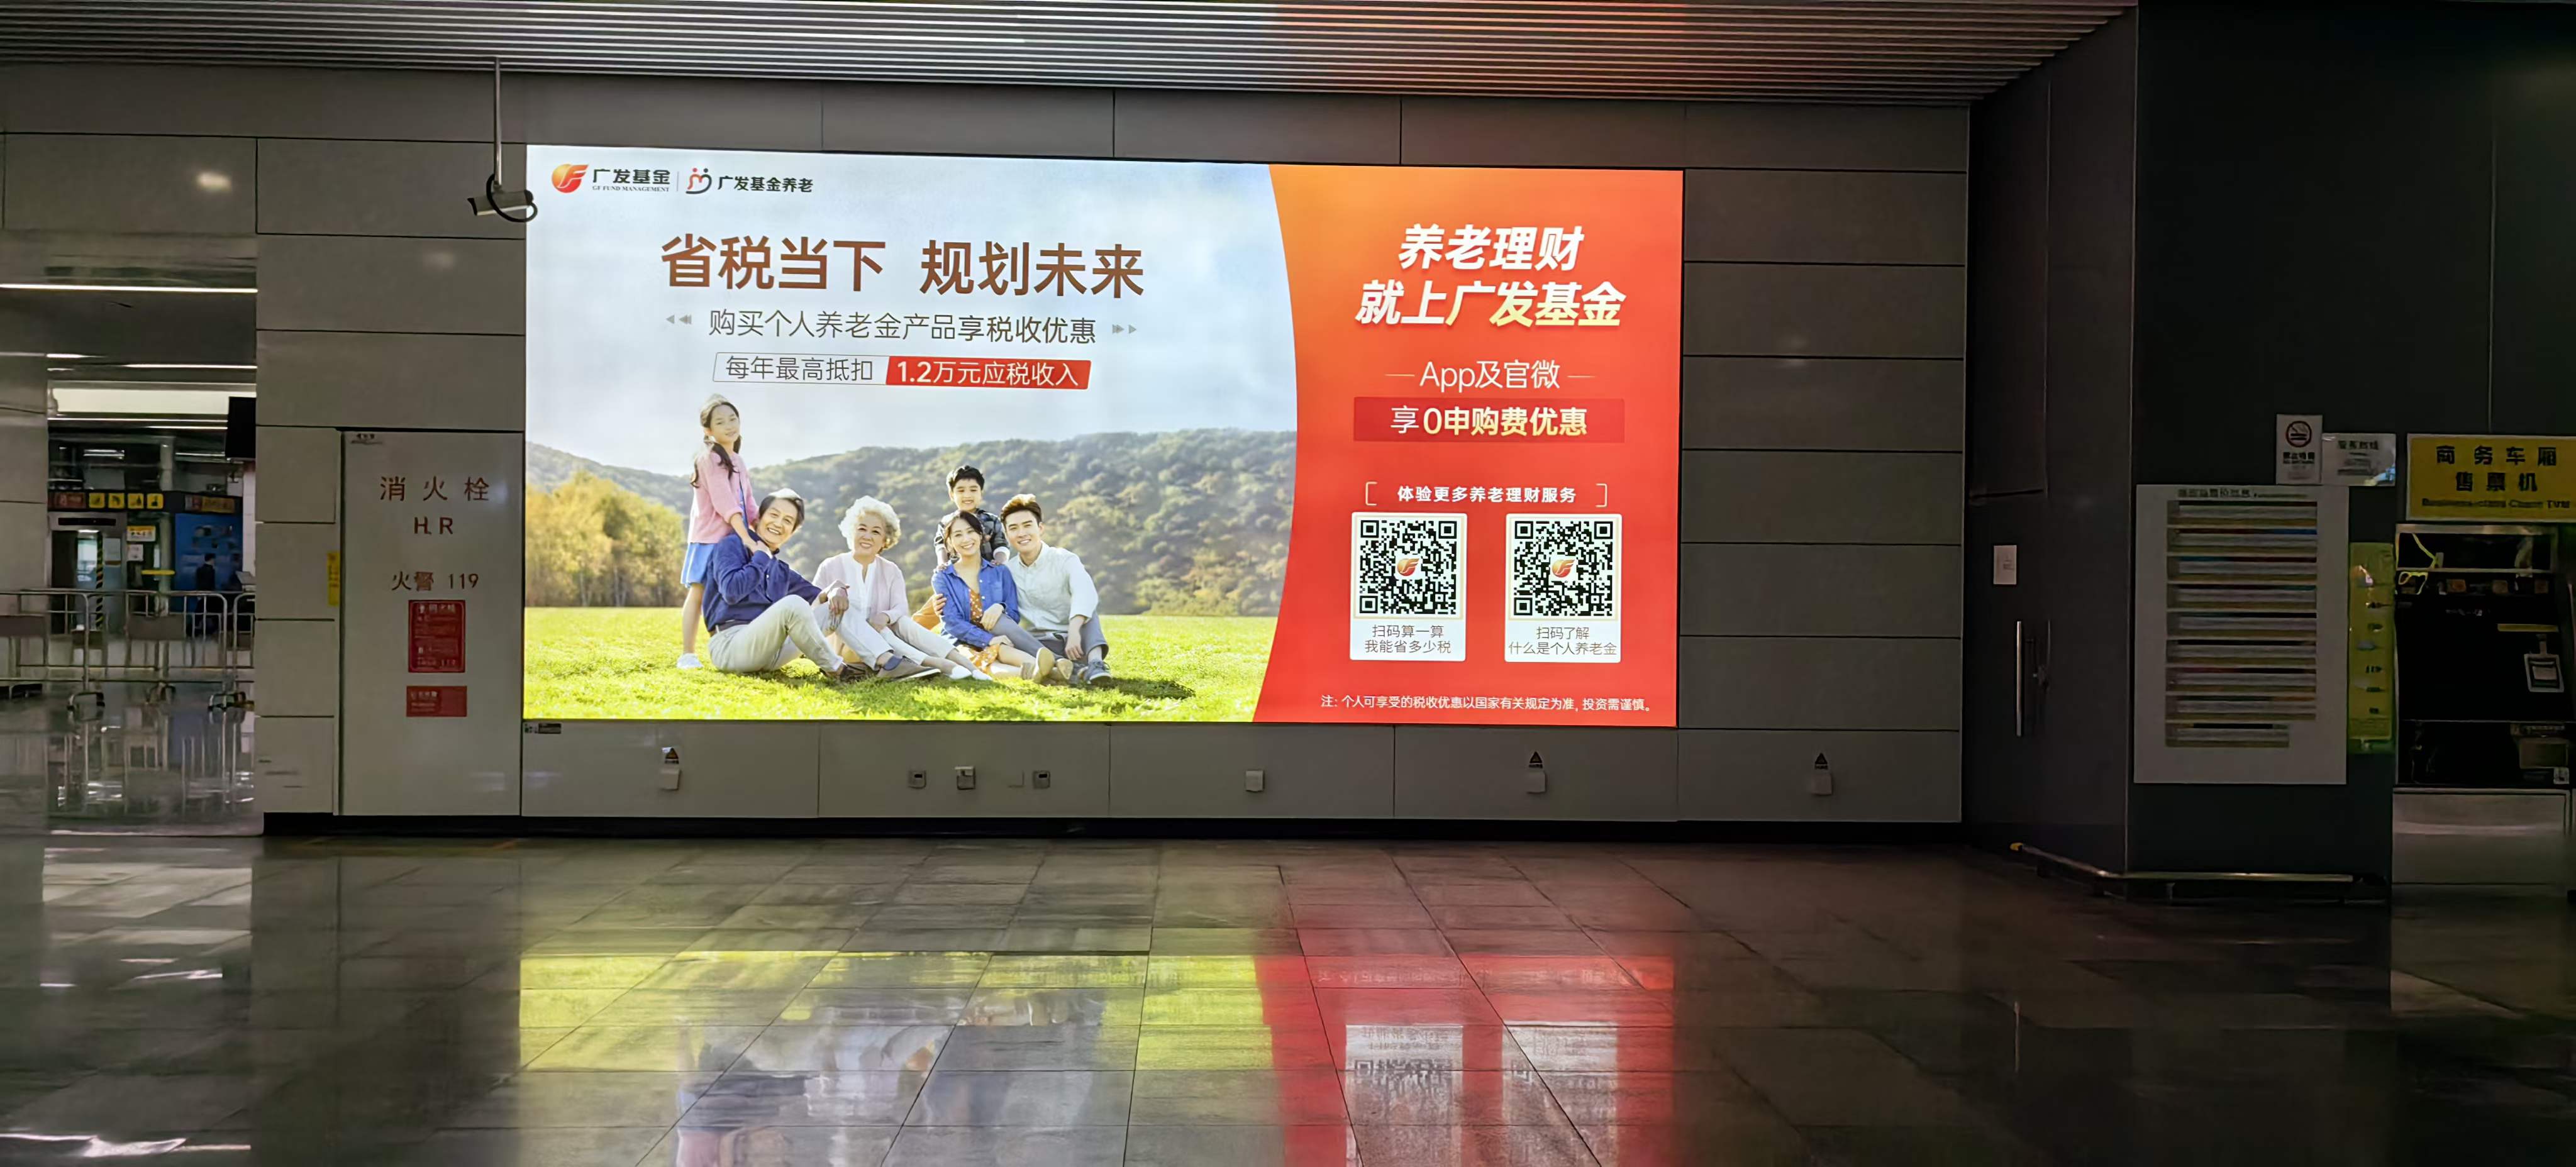 深圳地铁11号线广告引人注目的原因有哪些？